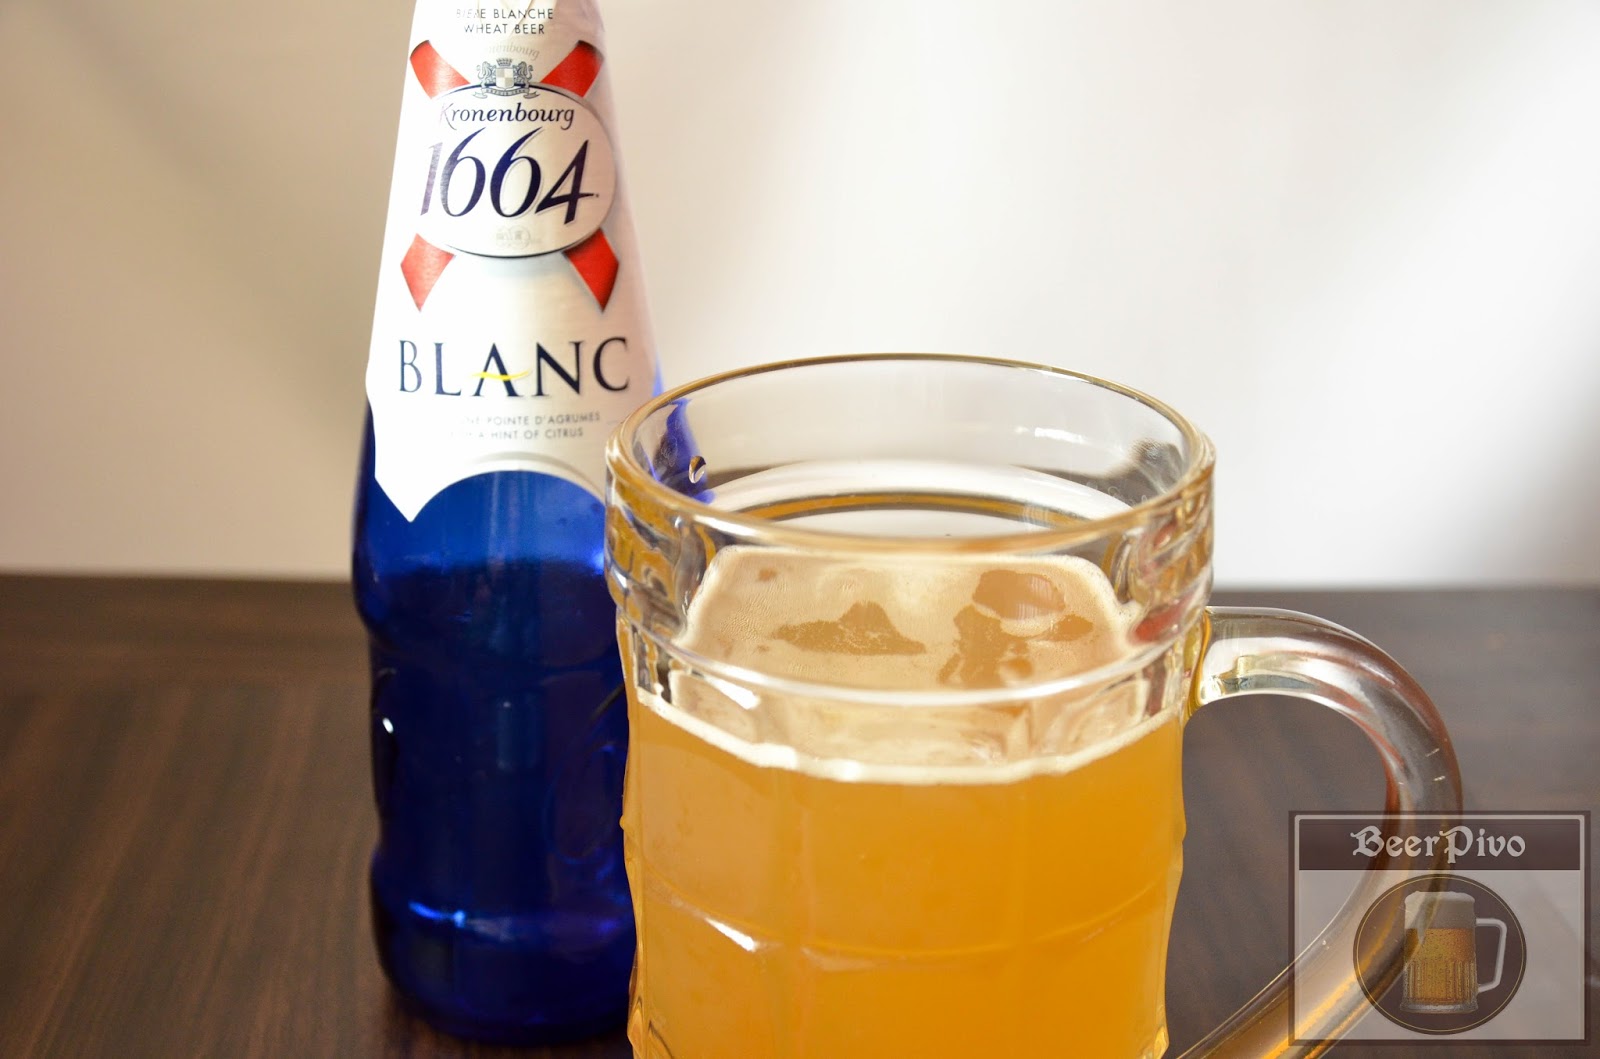 Пиво с синей этикеткой. Пиво Хугарден 1664. Пиво Кроненбург бланк. Пиво синяя бутылка 1664. 1664 Blanc.